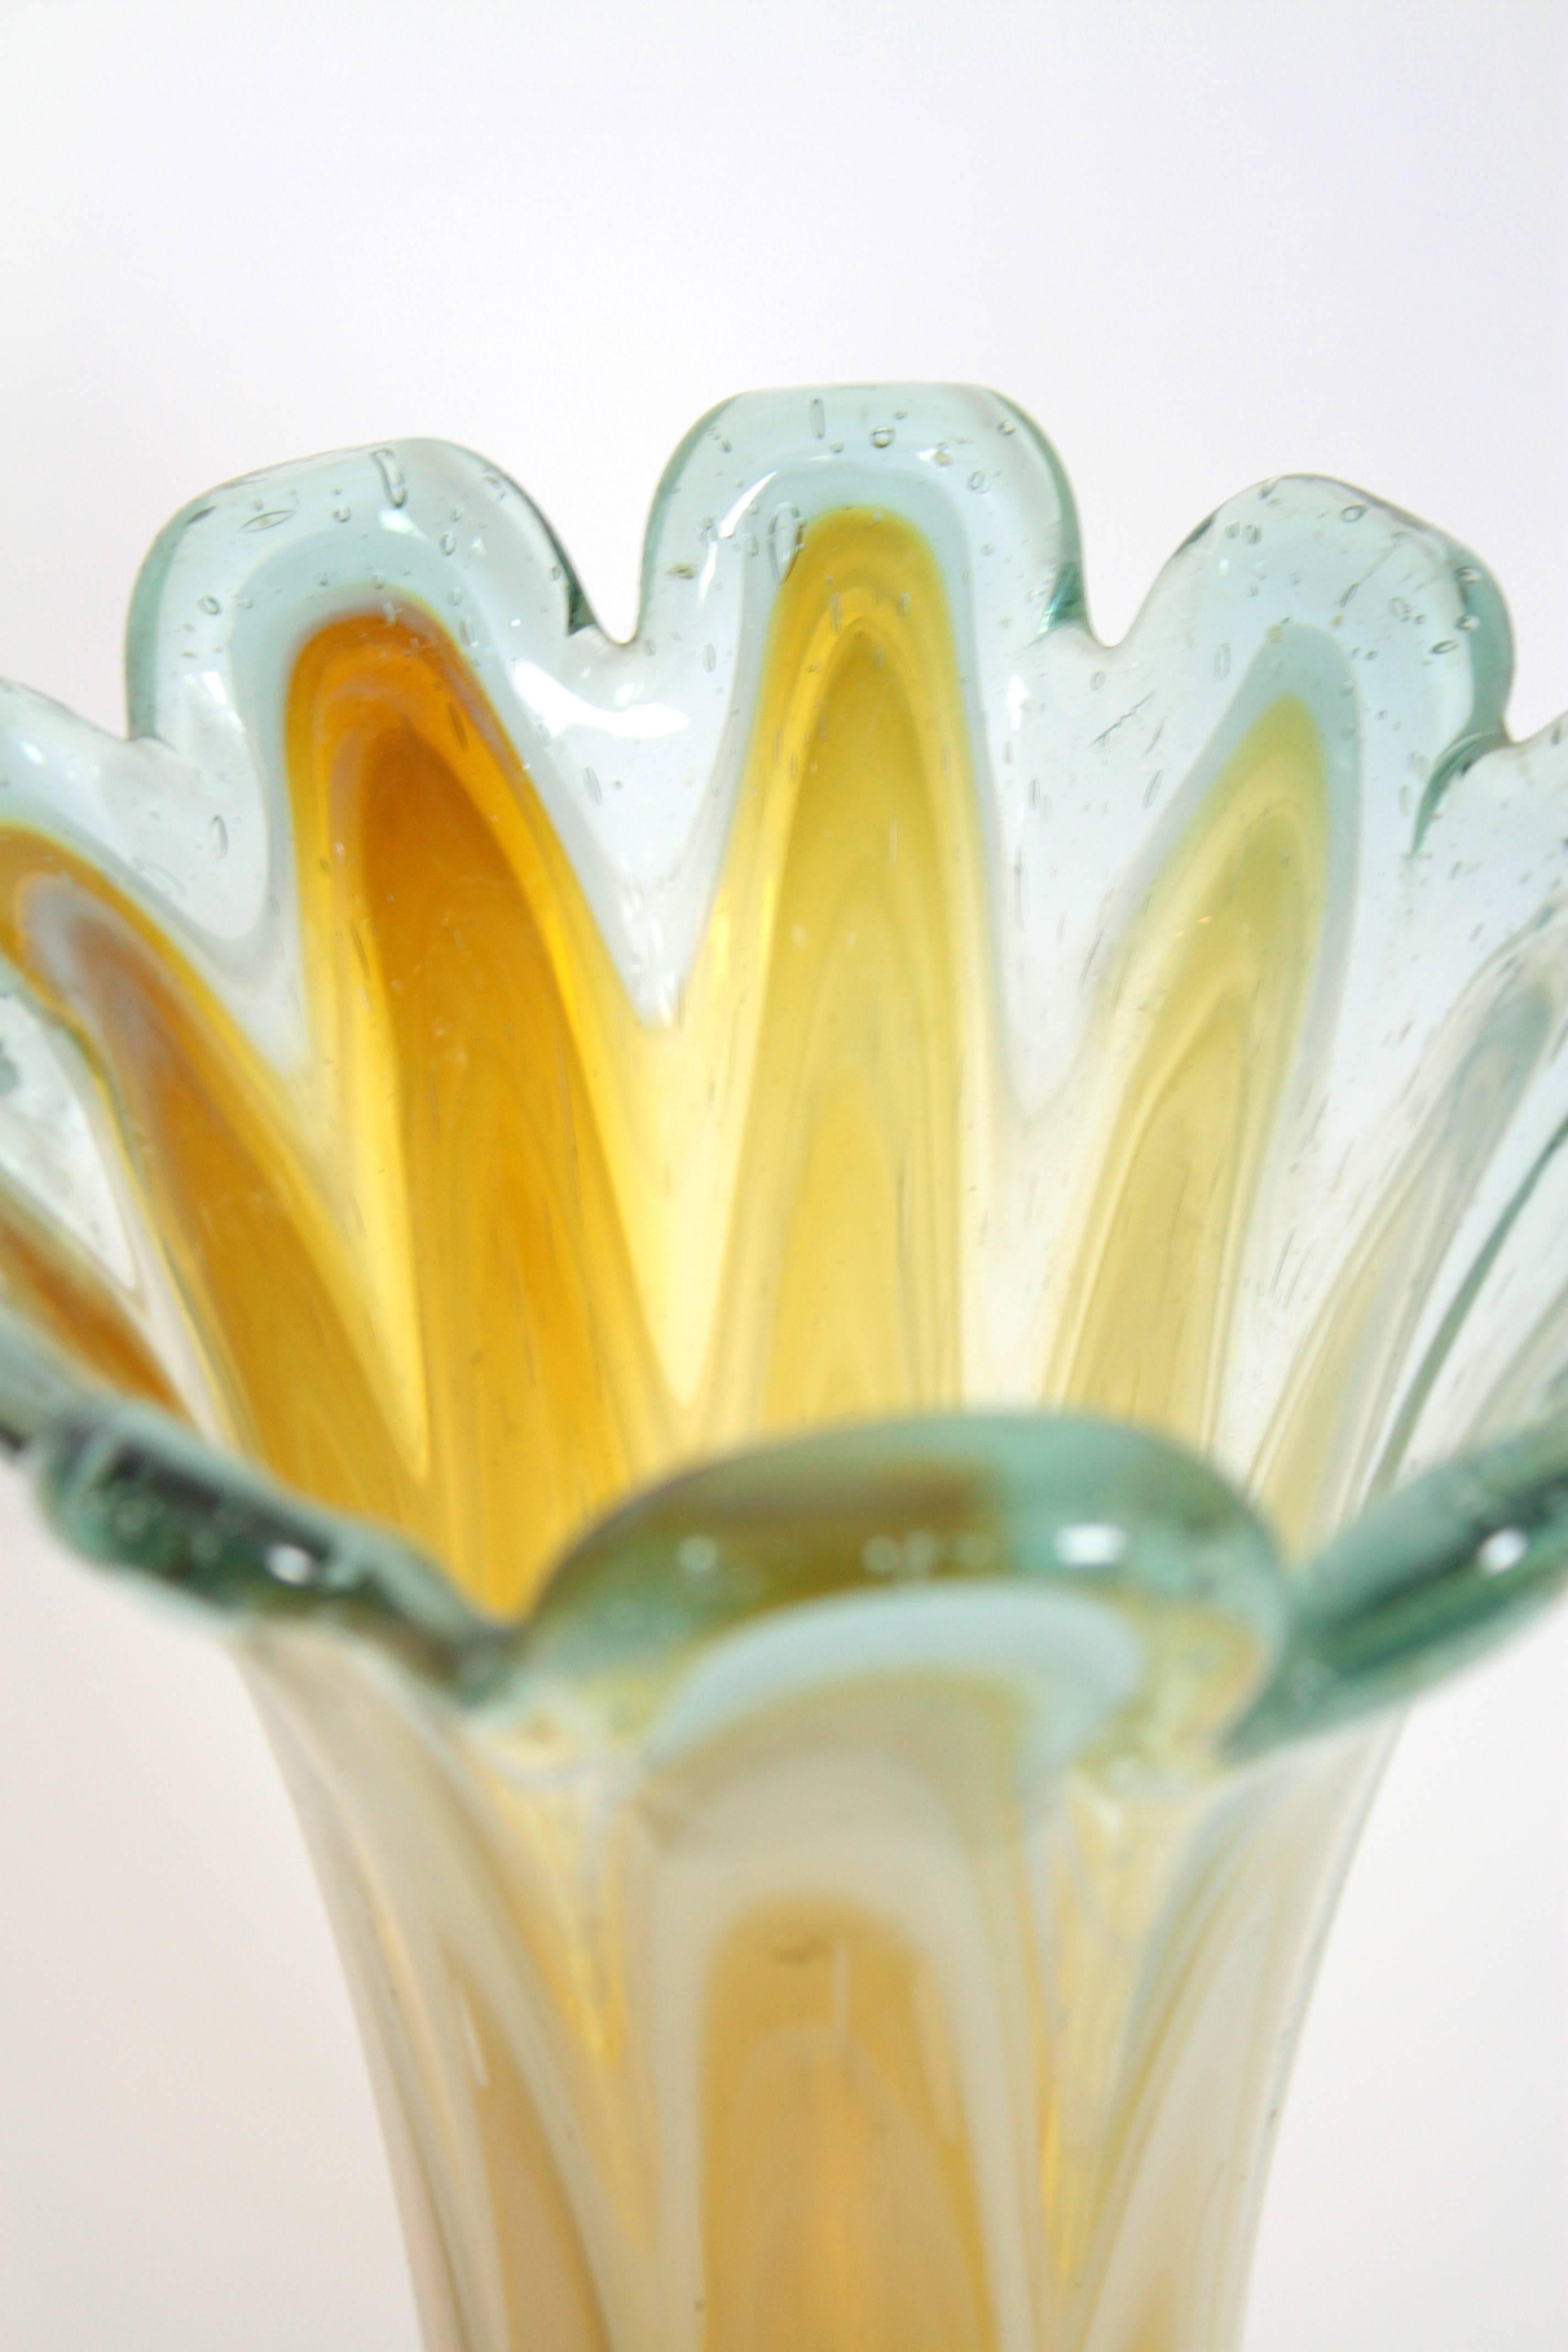 Skulpturale Vase aus mundgeblasenem Murano-Glas mit Wellenschliff (bernsteinfarbenes, cremefarbenes und weißes Glas), eingefasst in Klarglas. Italien, 1960er Jahre.
Die Vase ist in ausgezeichnetem Zustand. 
Punktförmige Markierung darunter.
Zu